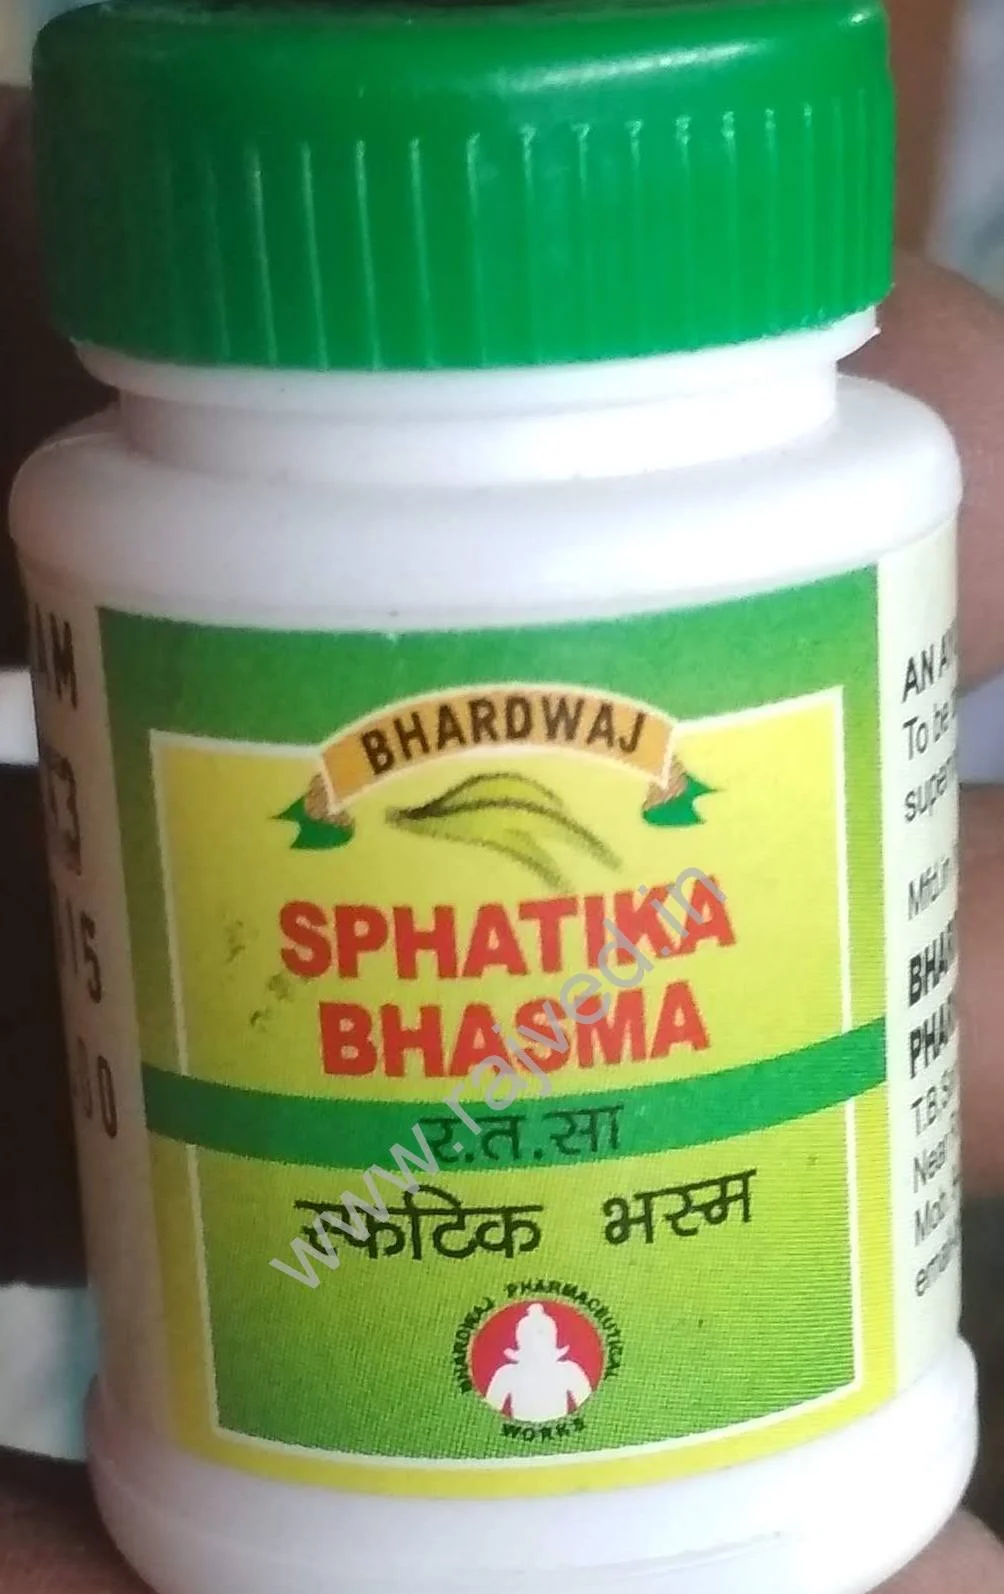 sphatika bhasma 1 kg upto 20% off free shipping bhardwaj pharmaceuticals indore